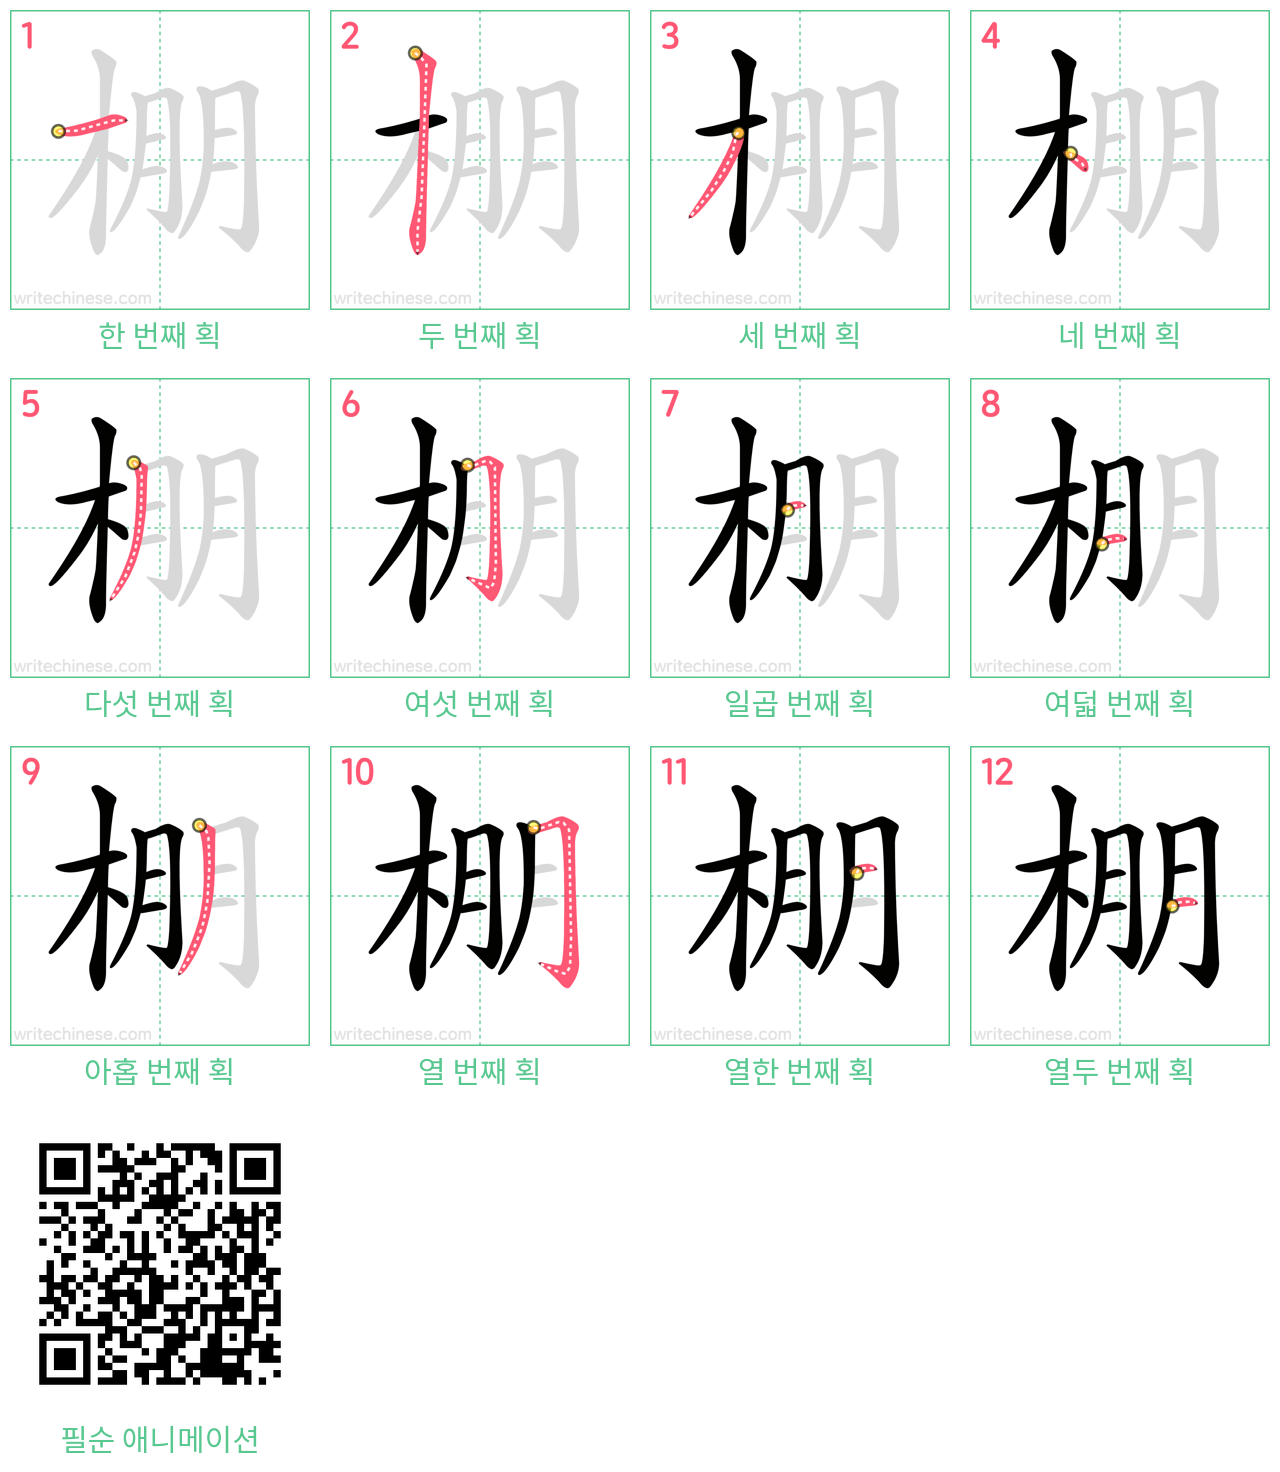 棚 step-by-step stroke order diagrams